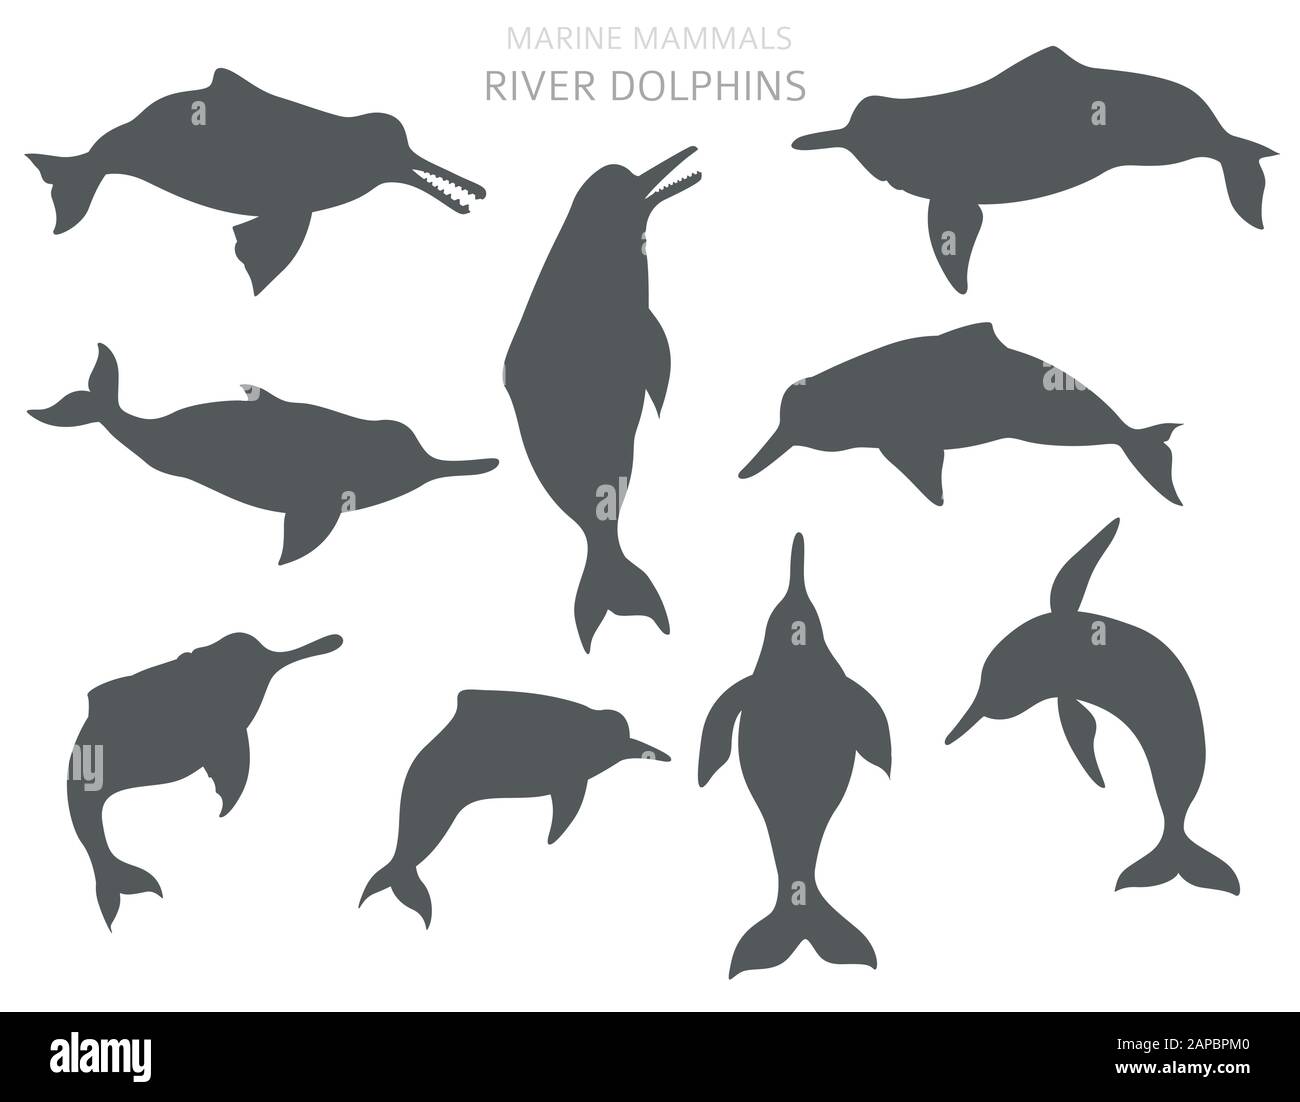 Set di delfini sul fiume. Collezione di mammiferi marini. Design in stile cartone animato piatto. Illustrazione del vettore Illustrazione Vettoriale